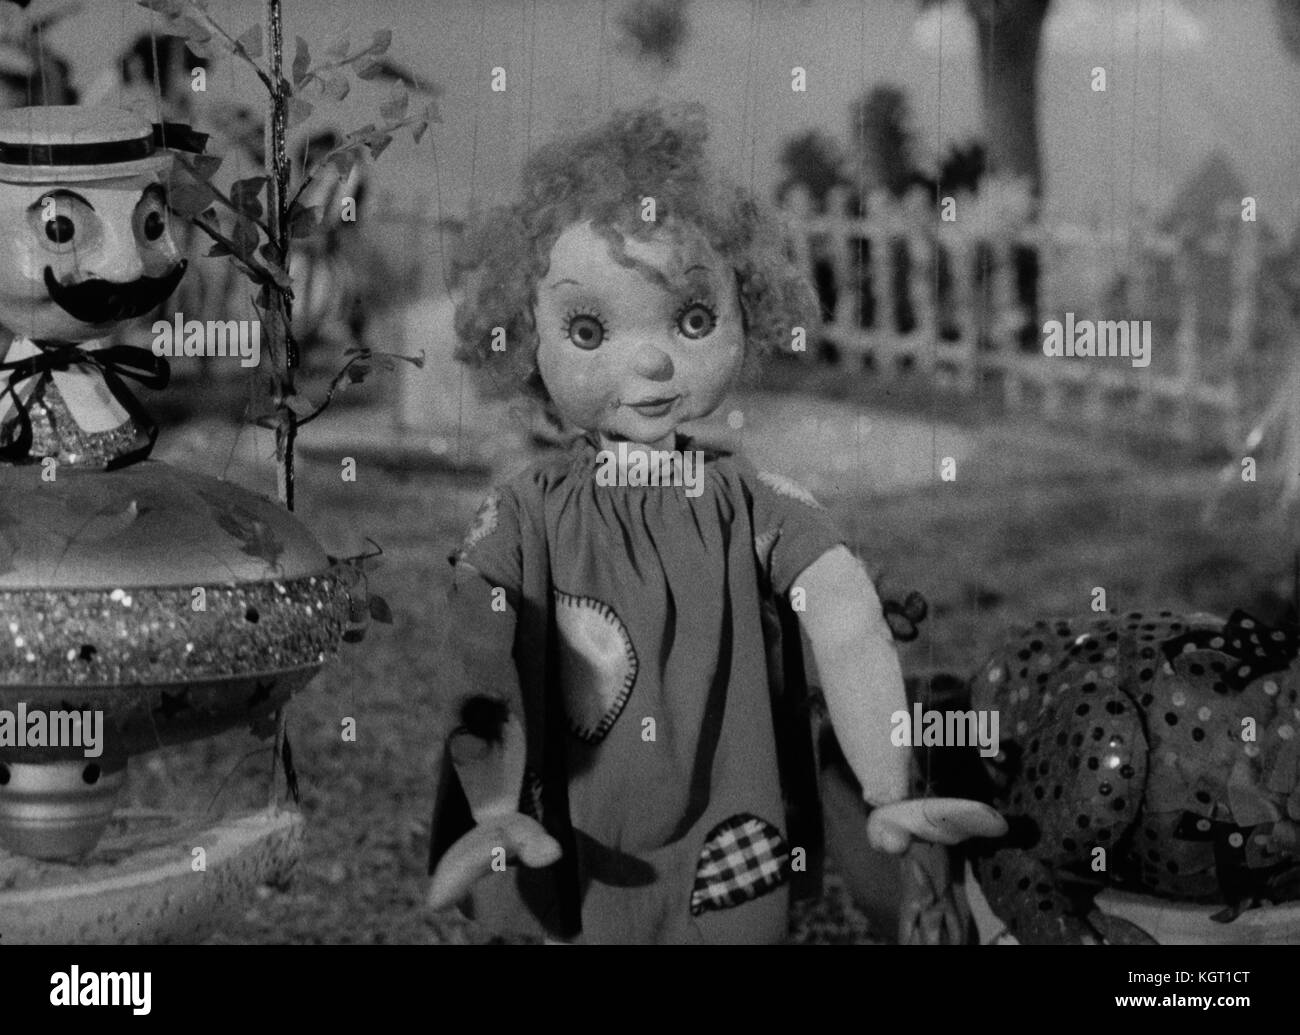 Torchy batteria Boy (1957) serie TV , serie uno, episodio ventuno, re oscilla scende a terra data: 1957 Foto Stock